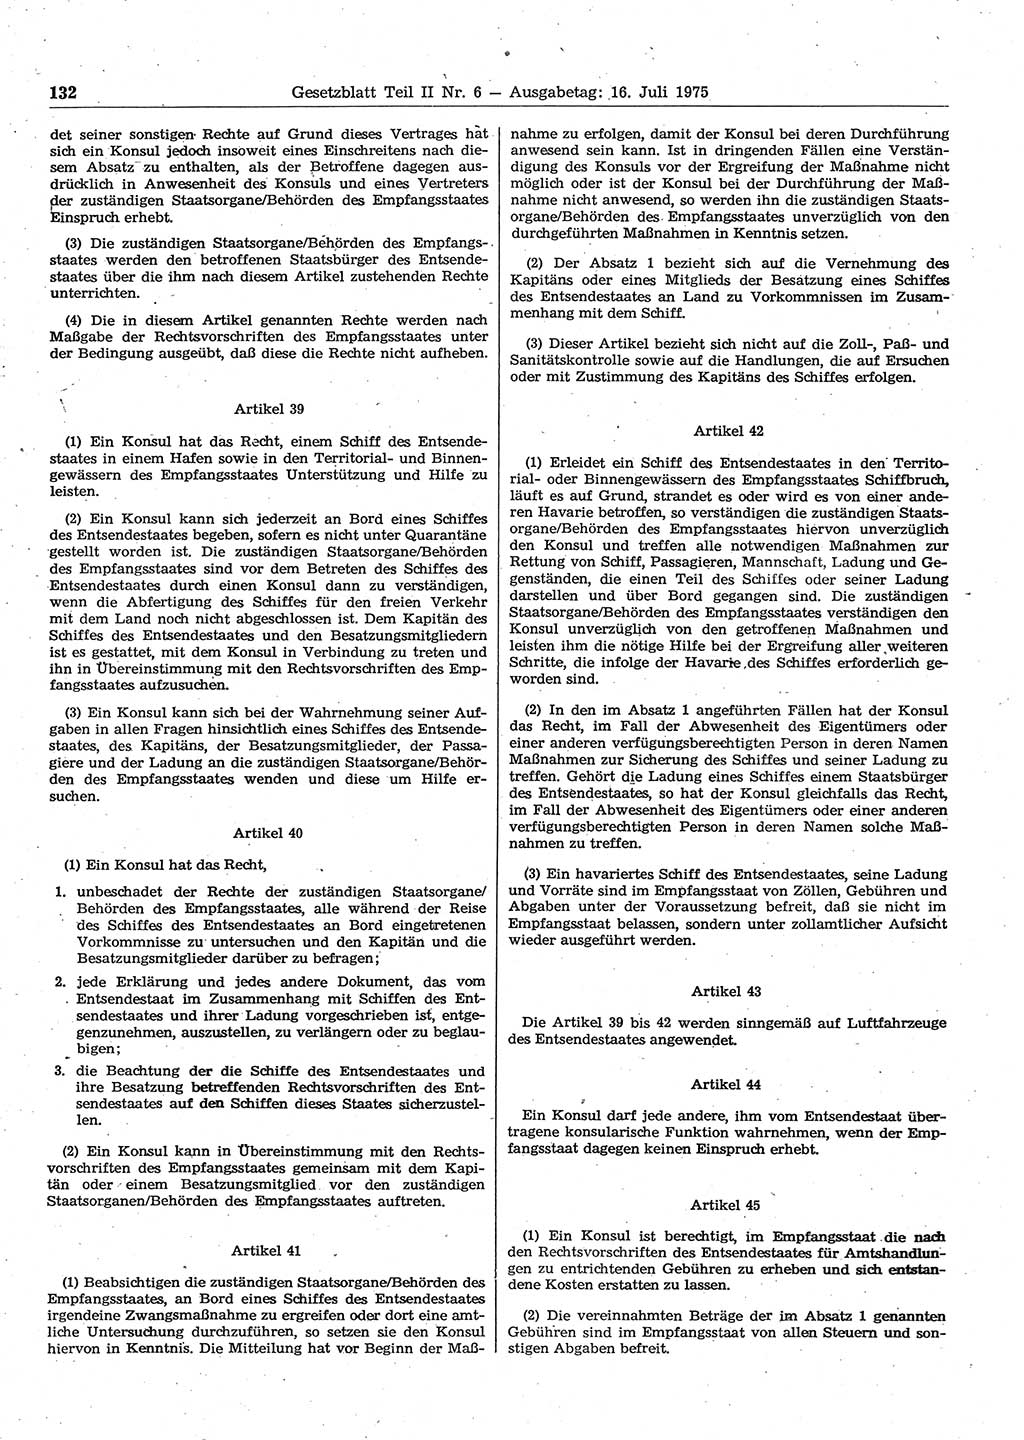 Gesetzblatt (GBl.) der Deutschen Demokratischen Republik (DDR) Teil ⅠⅠ 1975, Seite 132 (GBl. DDR ⅠⅠ 1975, S. 132)